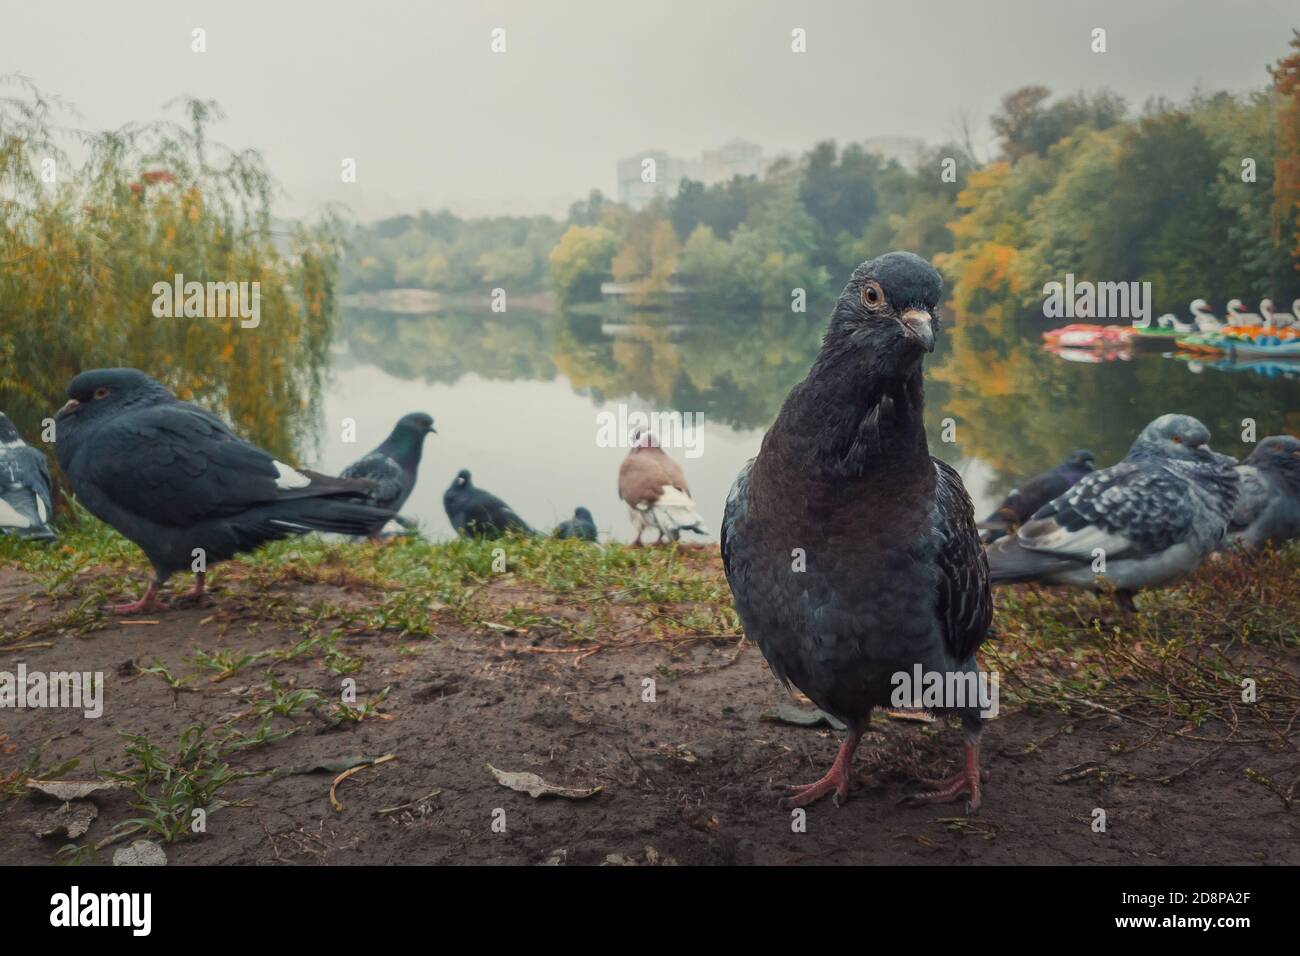 Nahaufnahme Porträt einer einzelnen Taube auf dem Boden im Herbstpark. Neugieriger Vogel, der aufmerksam auf die Kamera schaut, voller Körperlänge posiert. Wilde Taube am Stockfoto